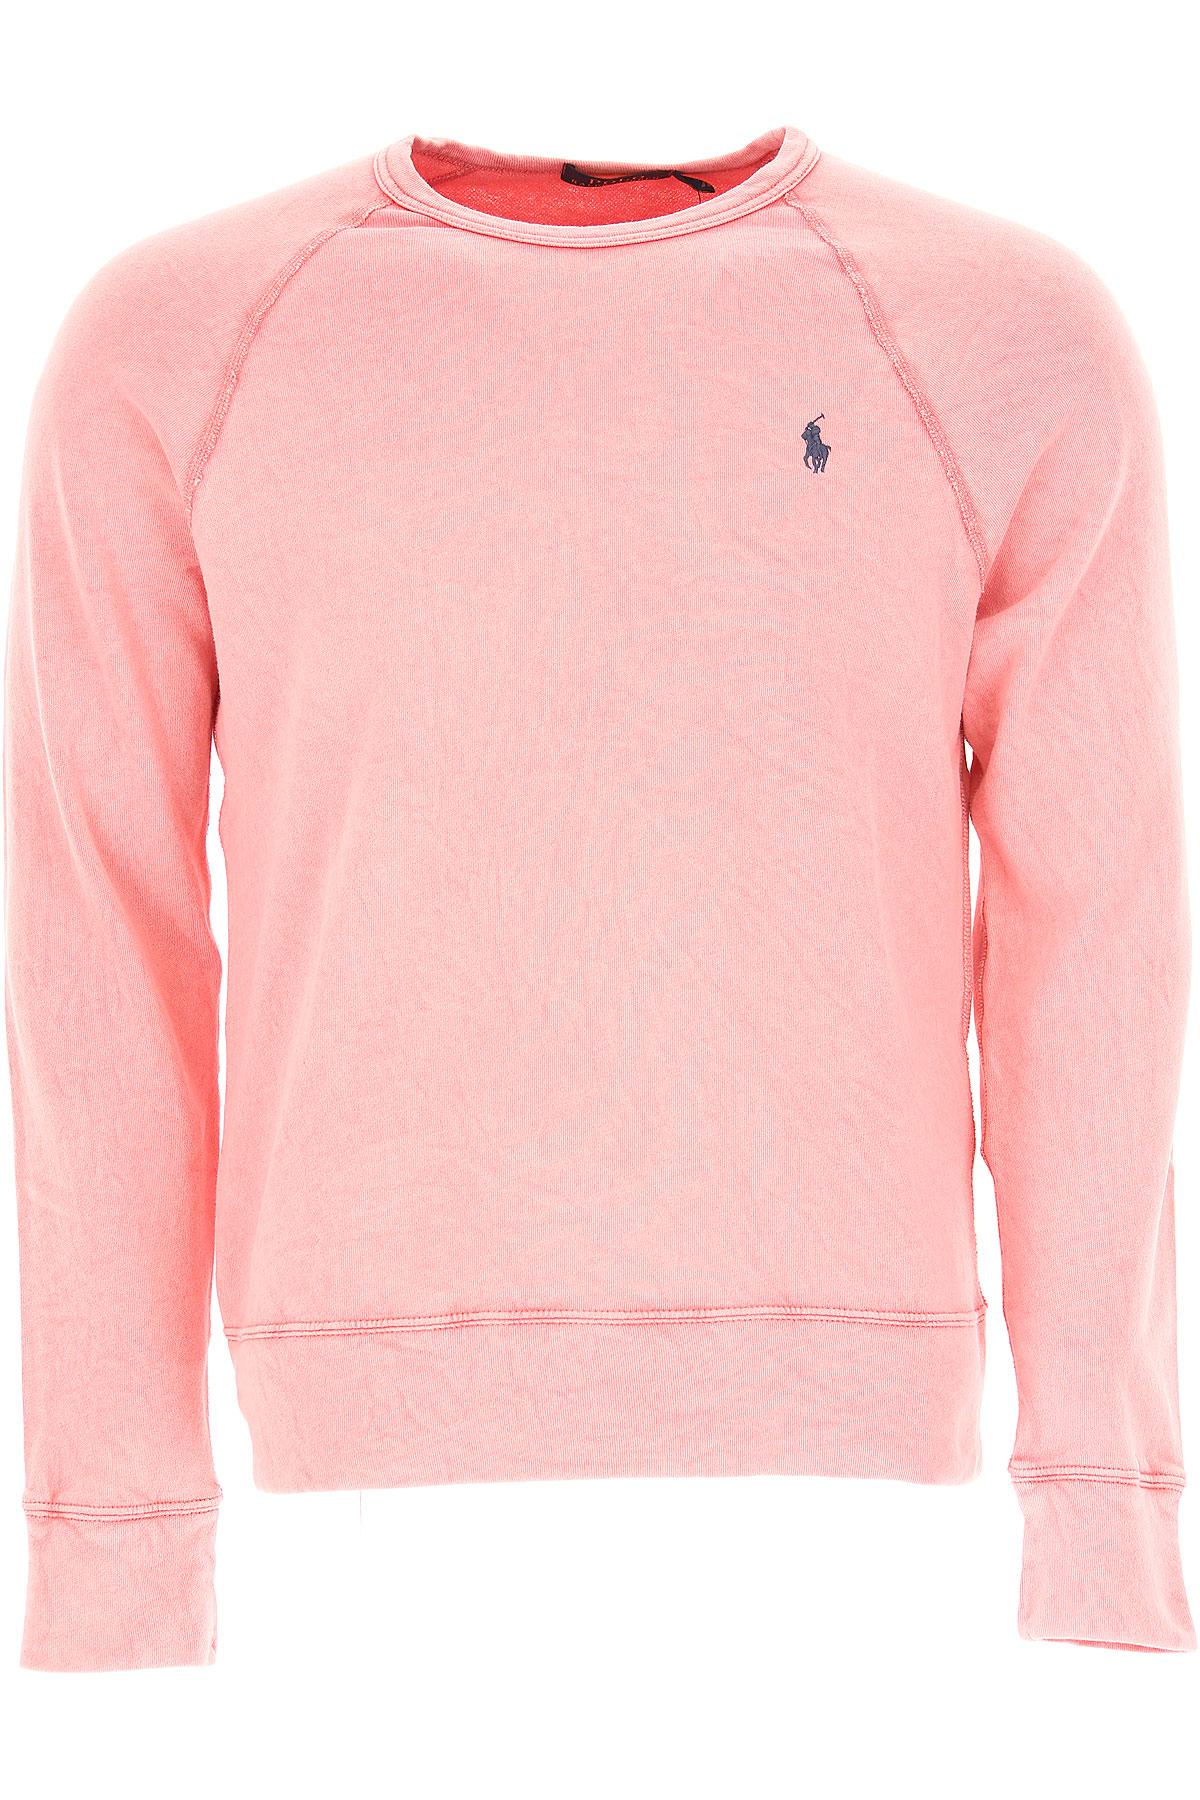 Ralph Lauren Cotton Sweatshirt For Men 